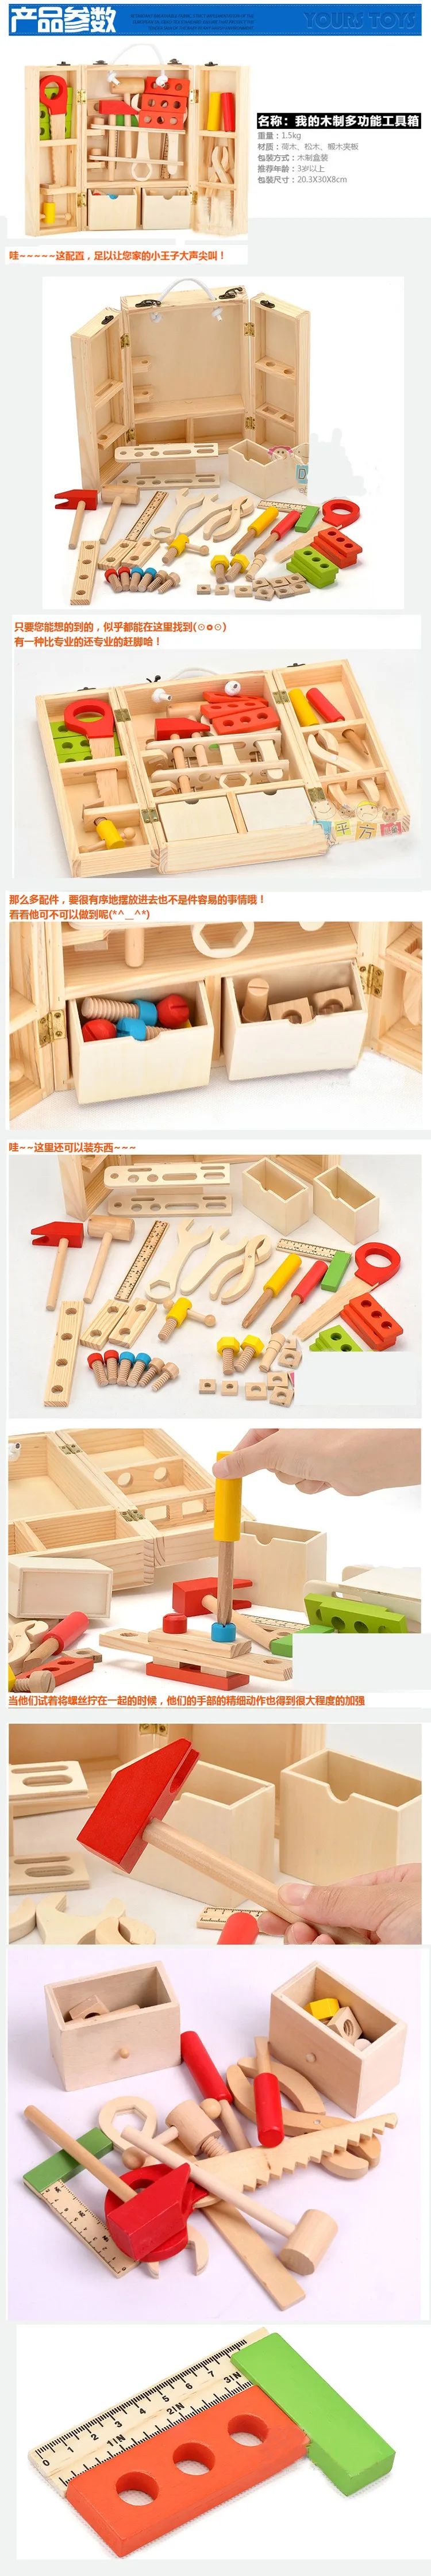 Детские игрушки для детей деревянный многофункциональный набор инструментов обслуживание коробка деревянная игрушка для малышей орех сочетание Рождество/подарок на день рождения